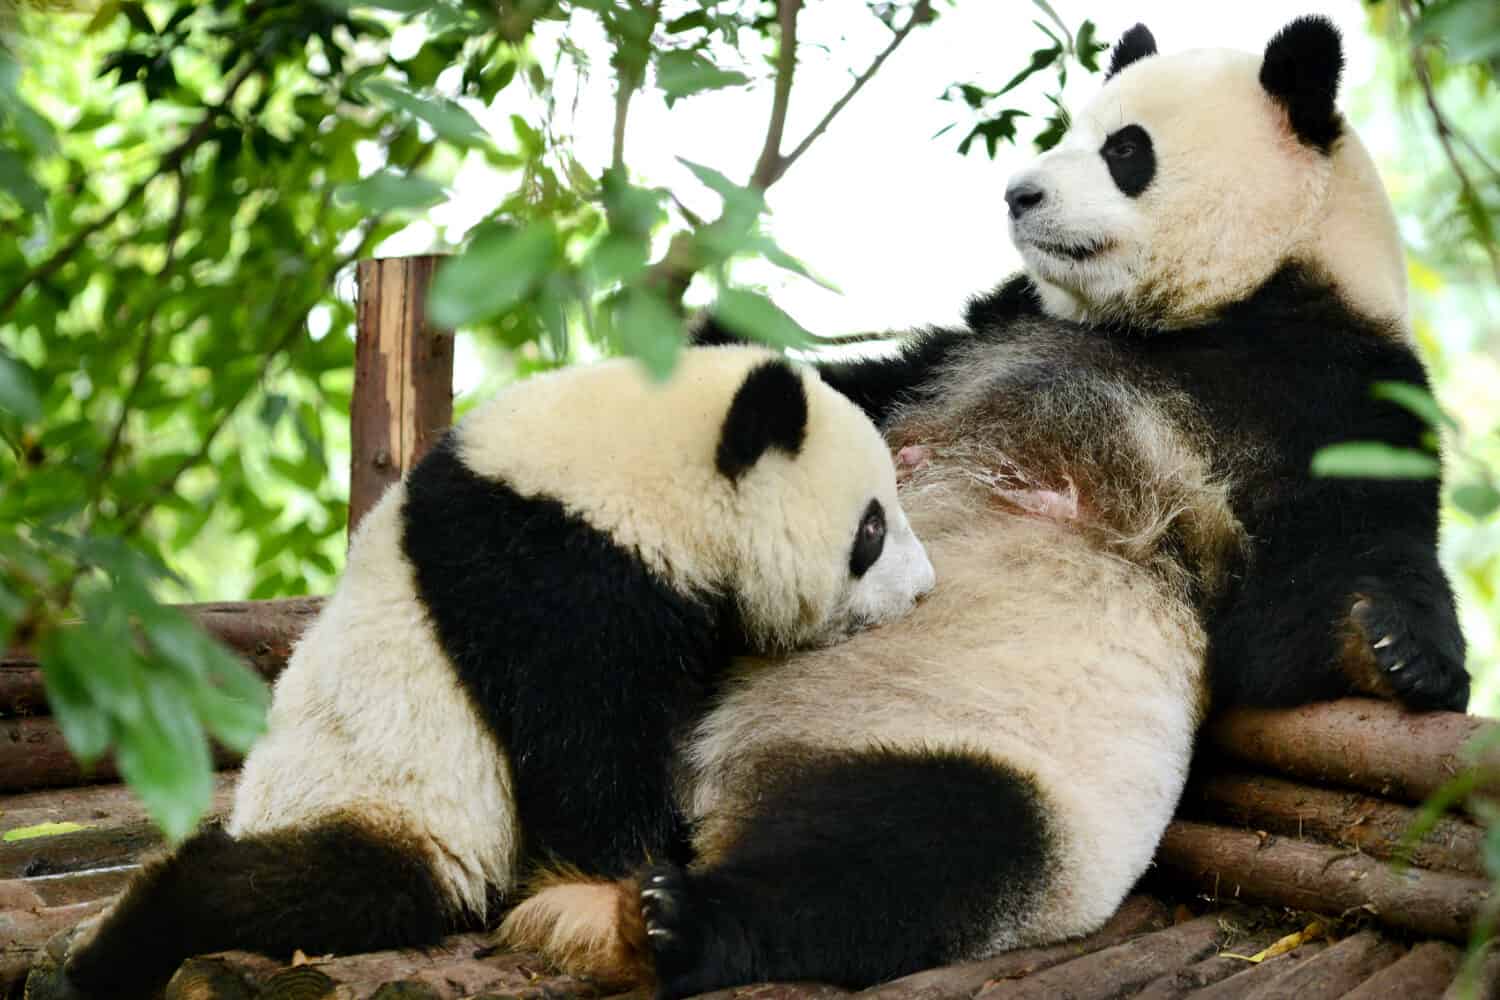 Cucciolo di panda gigante e madre che allatta al seno Chengdu, Cina